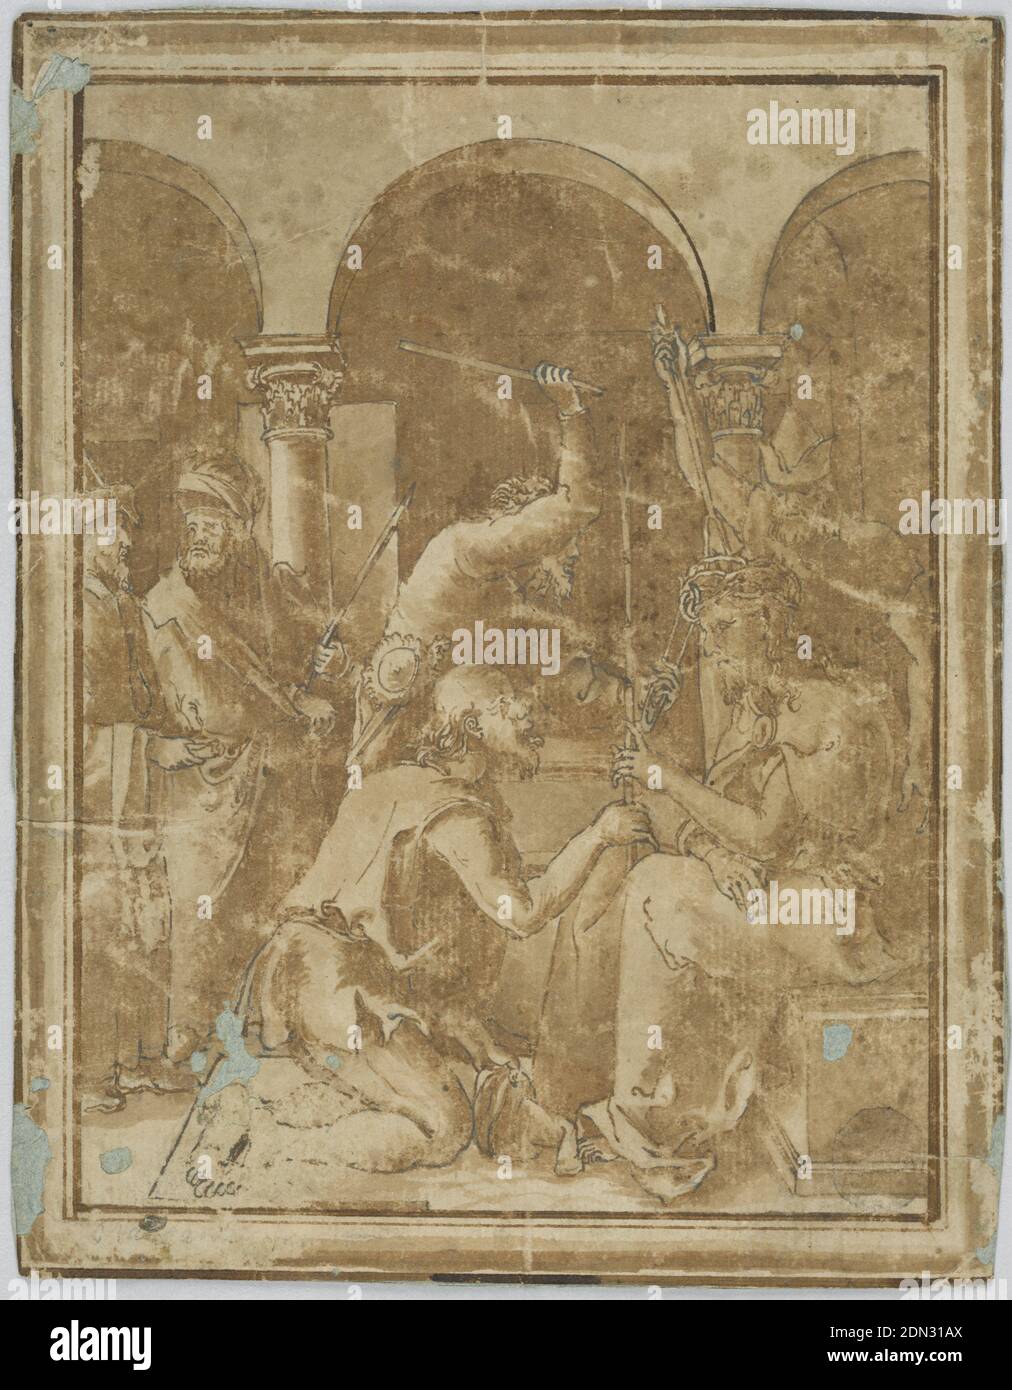 Copie du couronnement avec les épines dans la petite passion par Albrecht Durer, publié en 1511, Pen, pinceau et bistre sur papier, composition verticale du couronnement avec un cadre moulé, Italie, 1525–1600, religion, dessin Banque D'Images